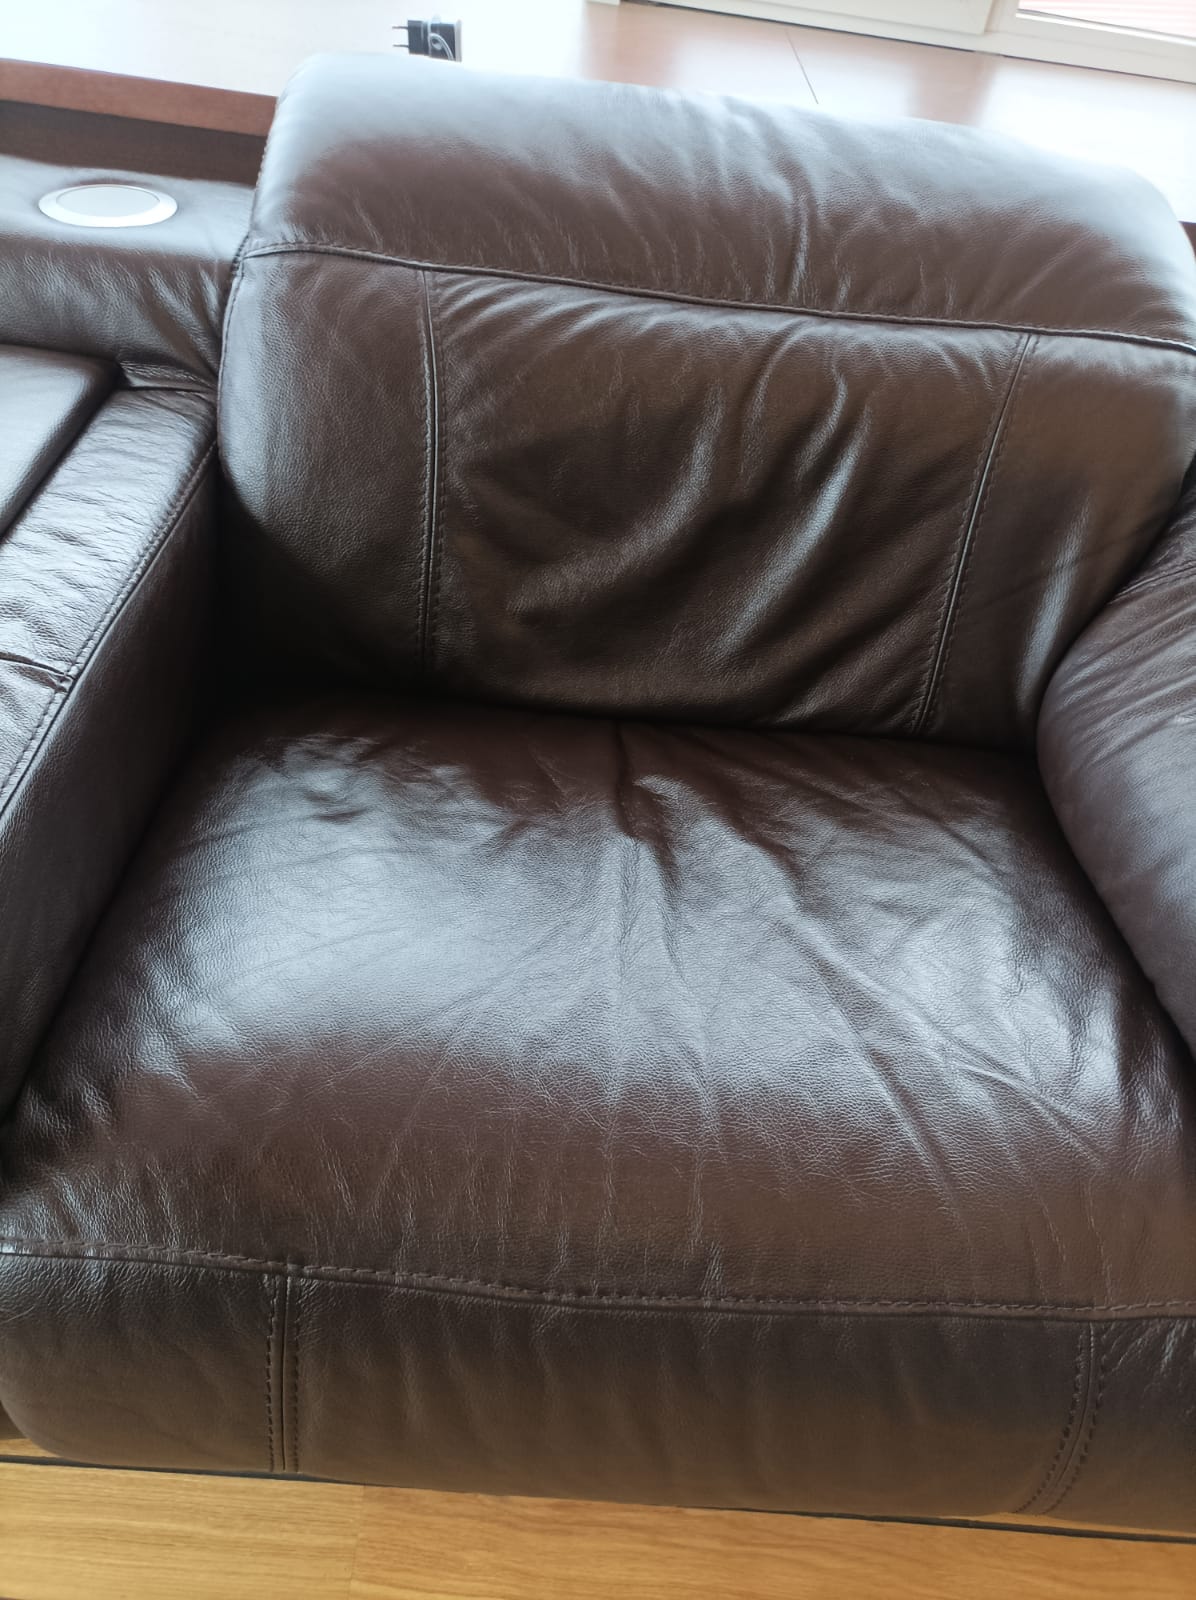 Химчистка кожаного дивана. Кожаные диван из Дагестана. Химчистка кожаной мебели